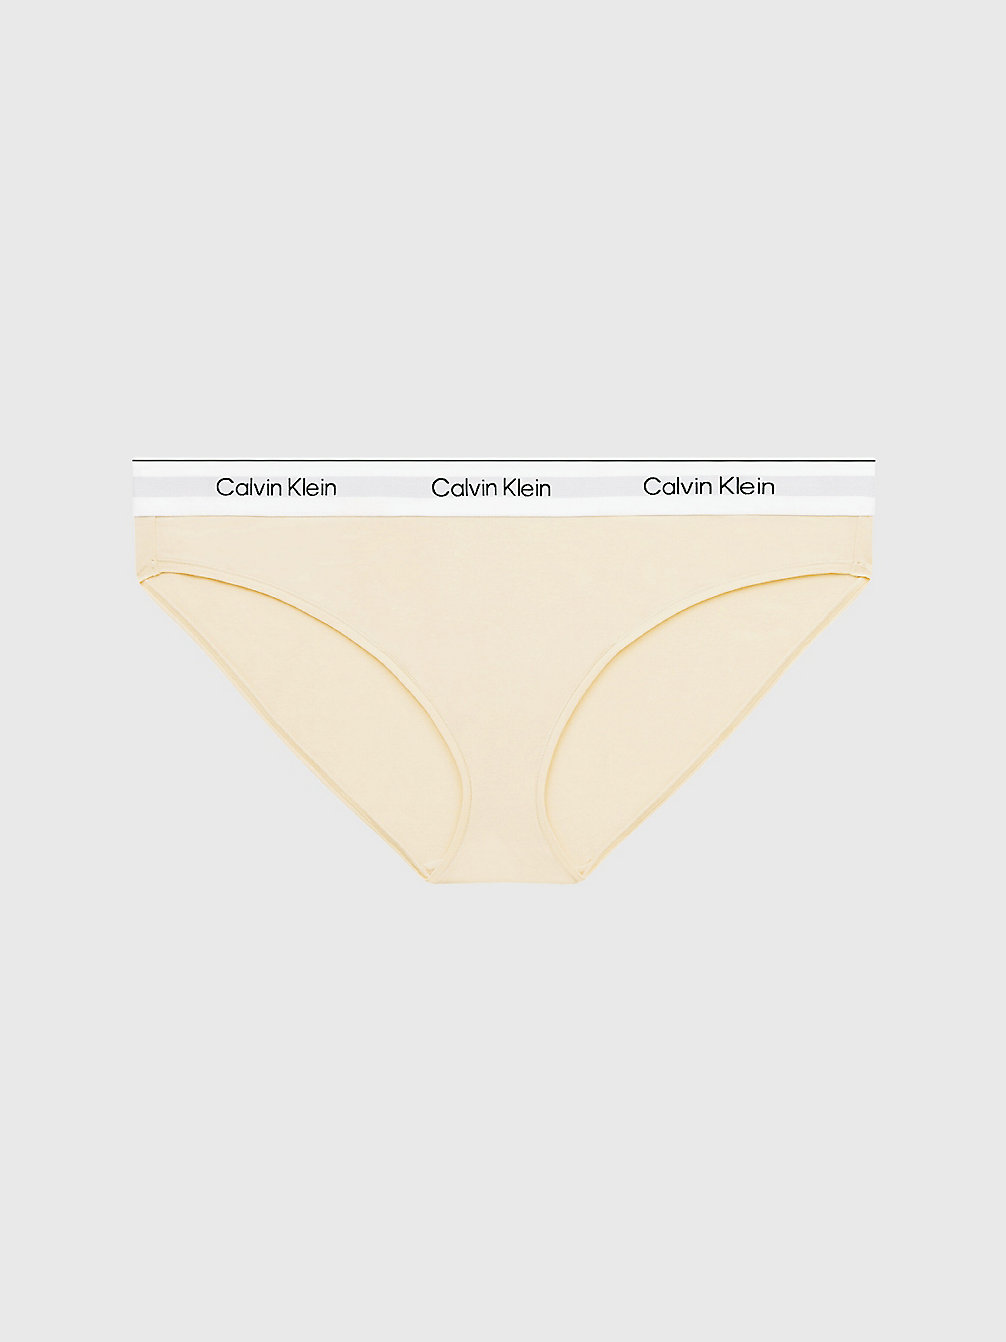 STONE > Слипы плюс-сайз - Modern Cotton > undefined Женщины - Calvin Klein